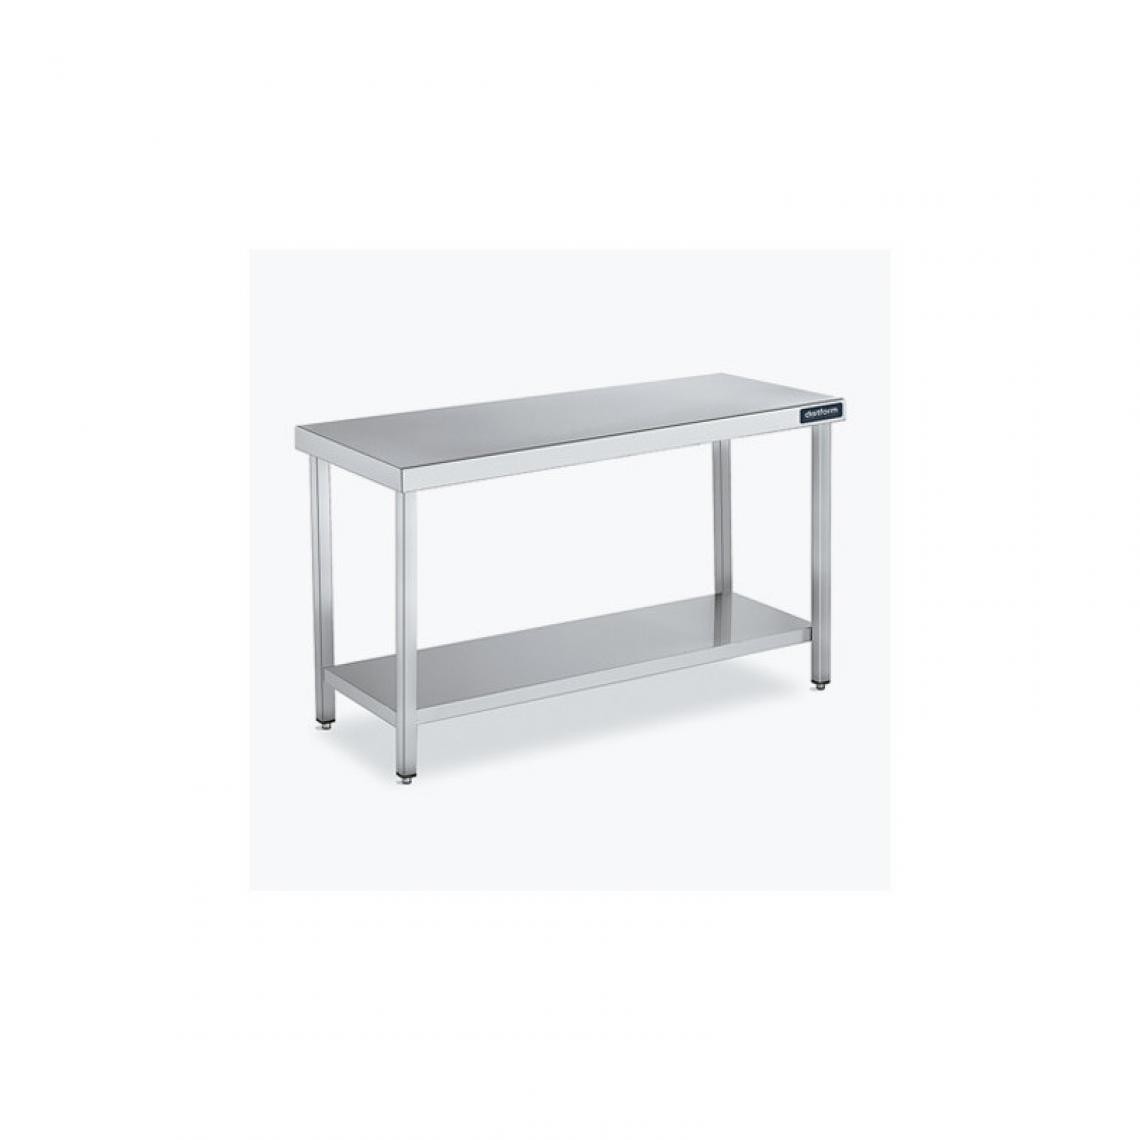 DISTFORM - Table Centrale 600x900 avec Étagère - Distform - Inox 18/102600x900x850mm - Tables à manger